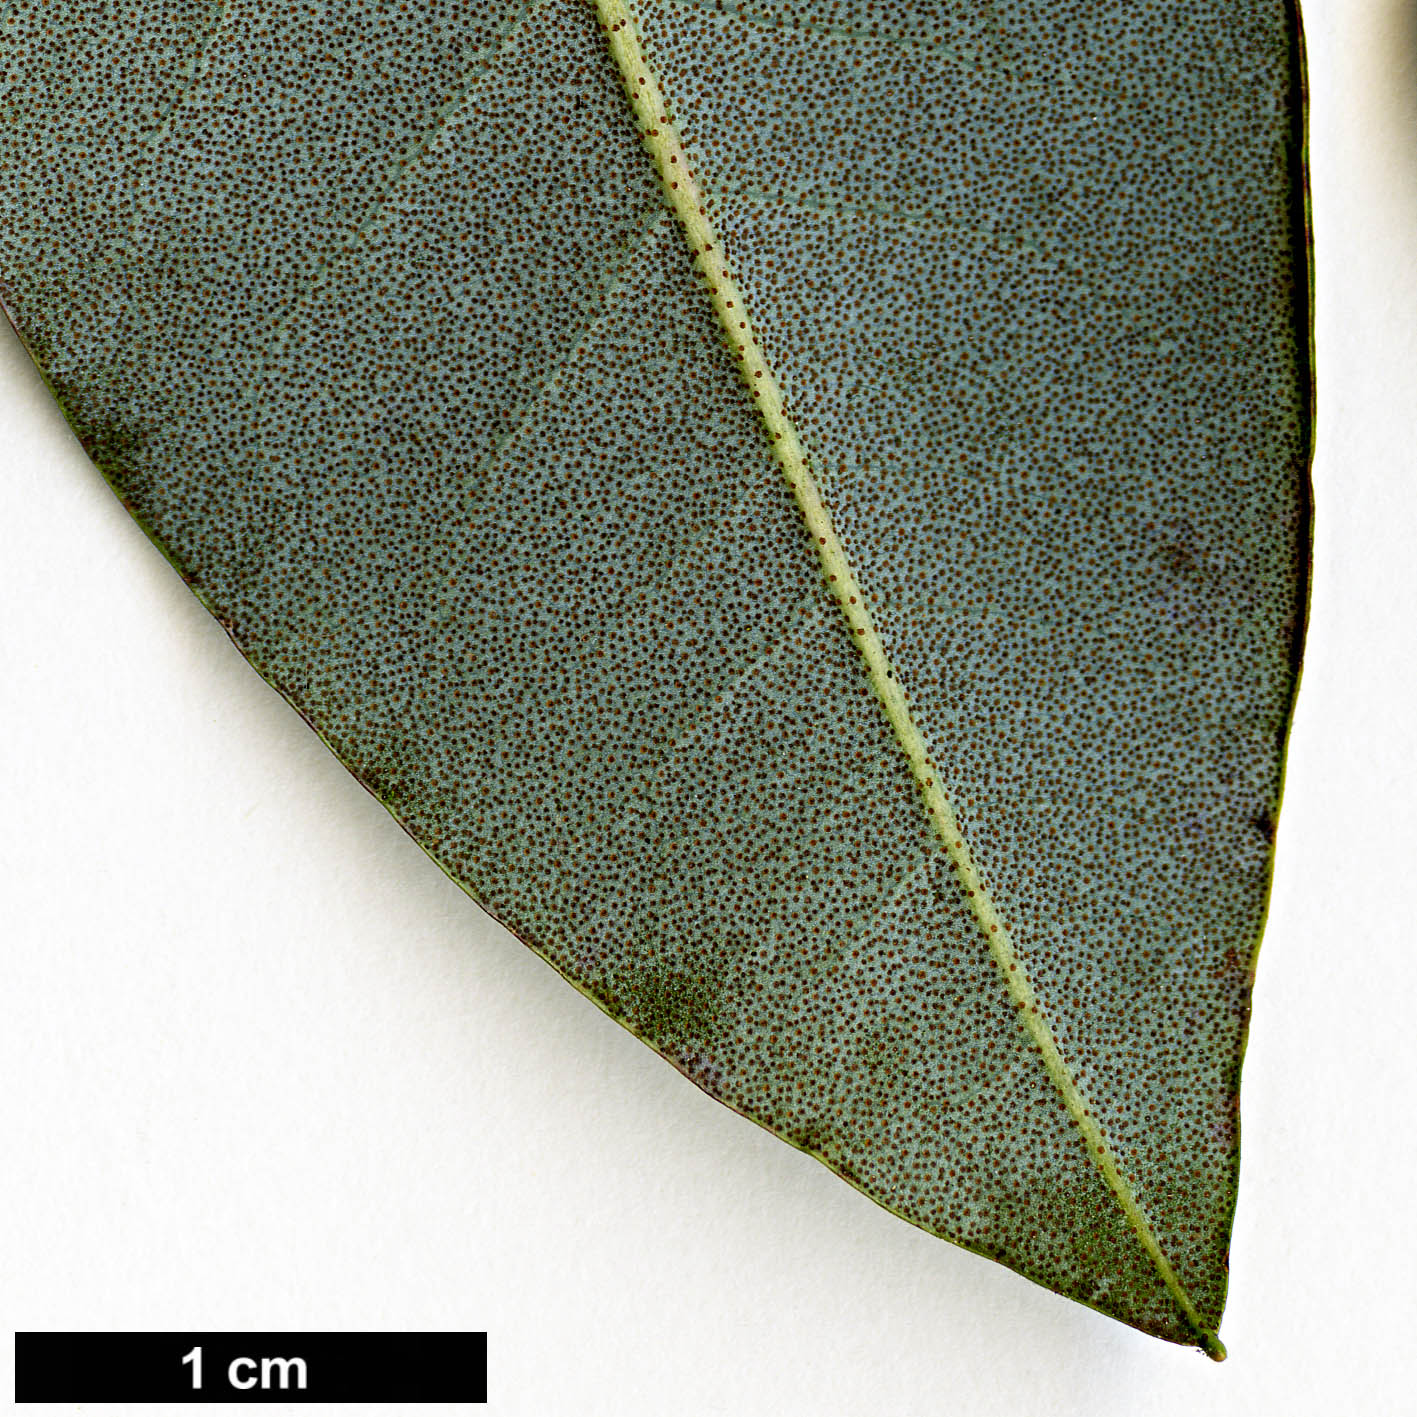 High resolution image: Family: Ericaceae - Genus: Rhododendron - Taxon: triflorum - SpeciesSub: var. bauhiniiflorum